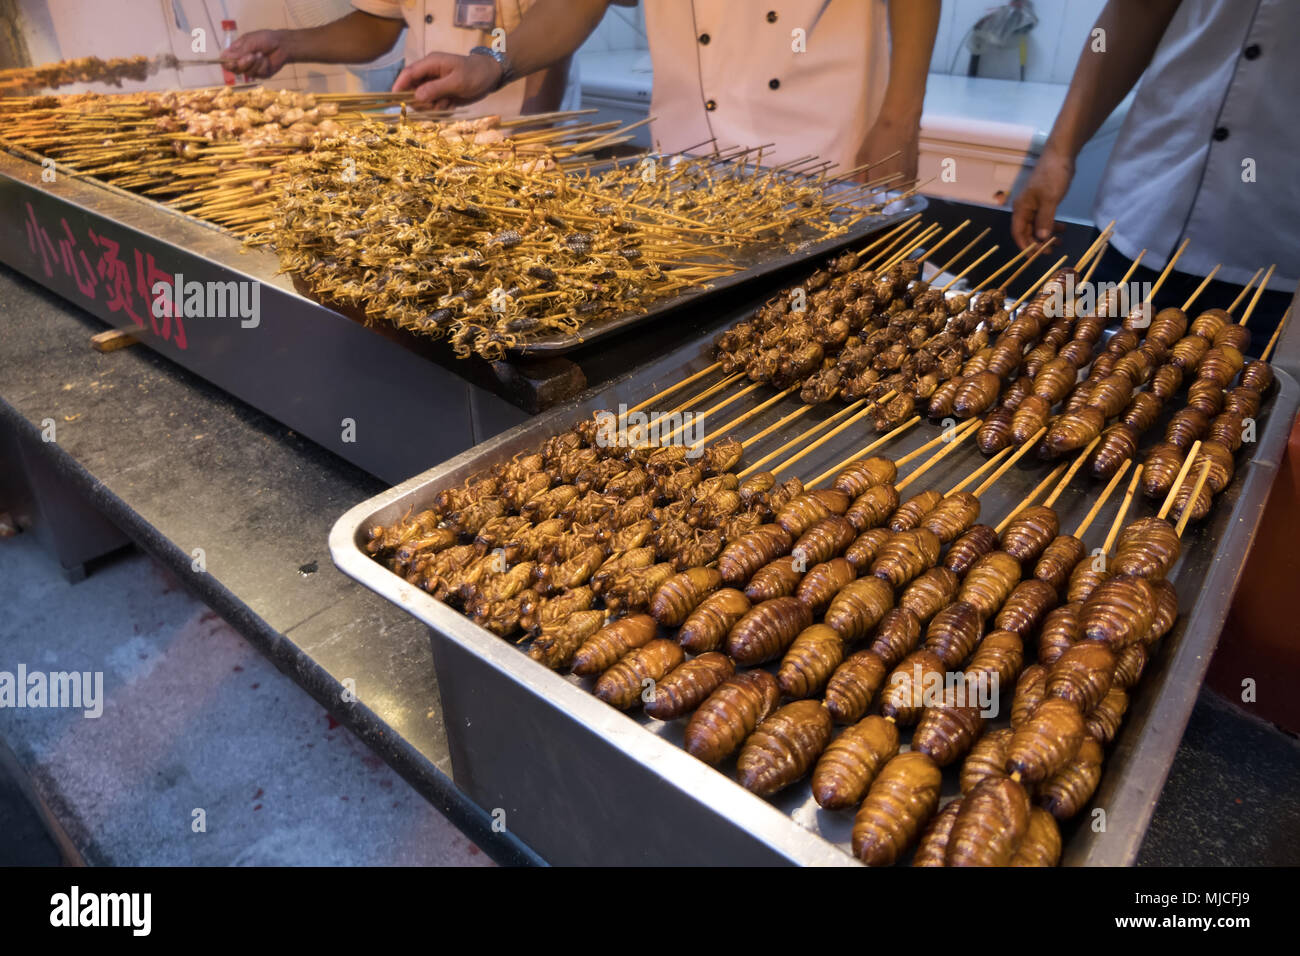 Tradizionale cibo asiatico in negozio: scorpioni, bug, larve di insetti. Il ristorante cinese cucina. Mercato di Pechino, Cina, Asia Foto Stock